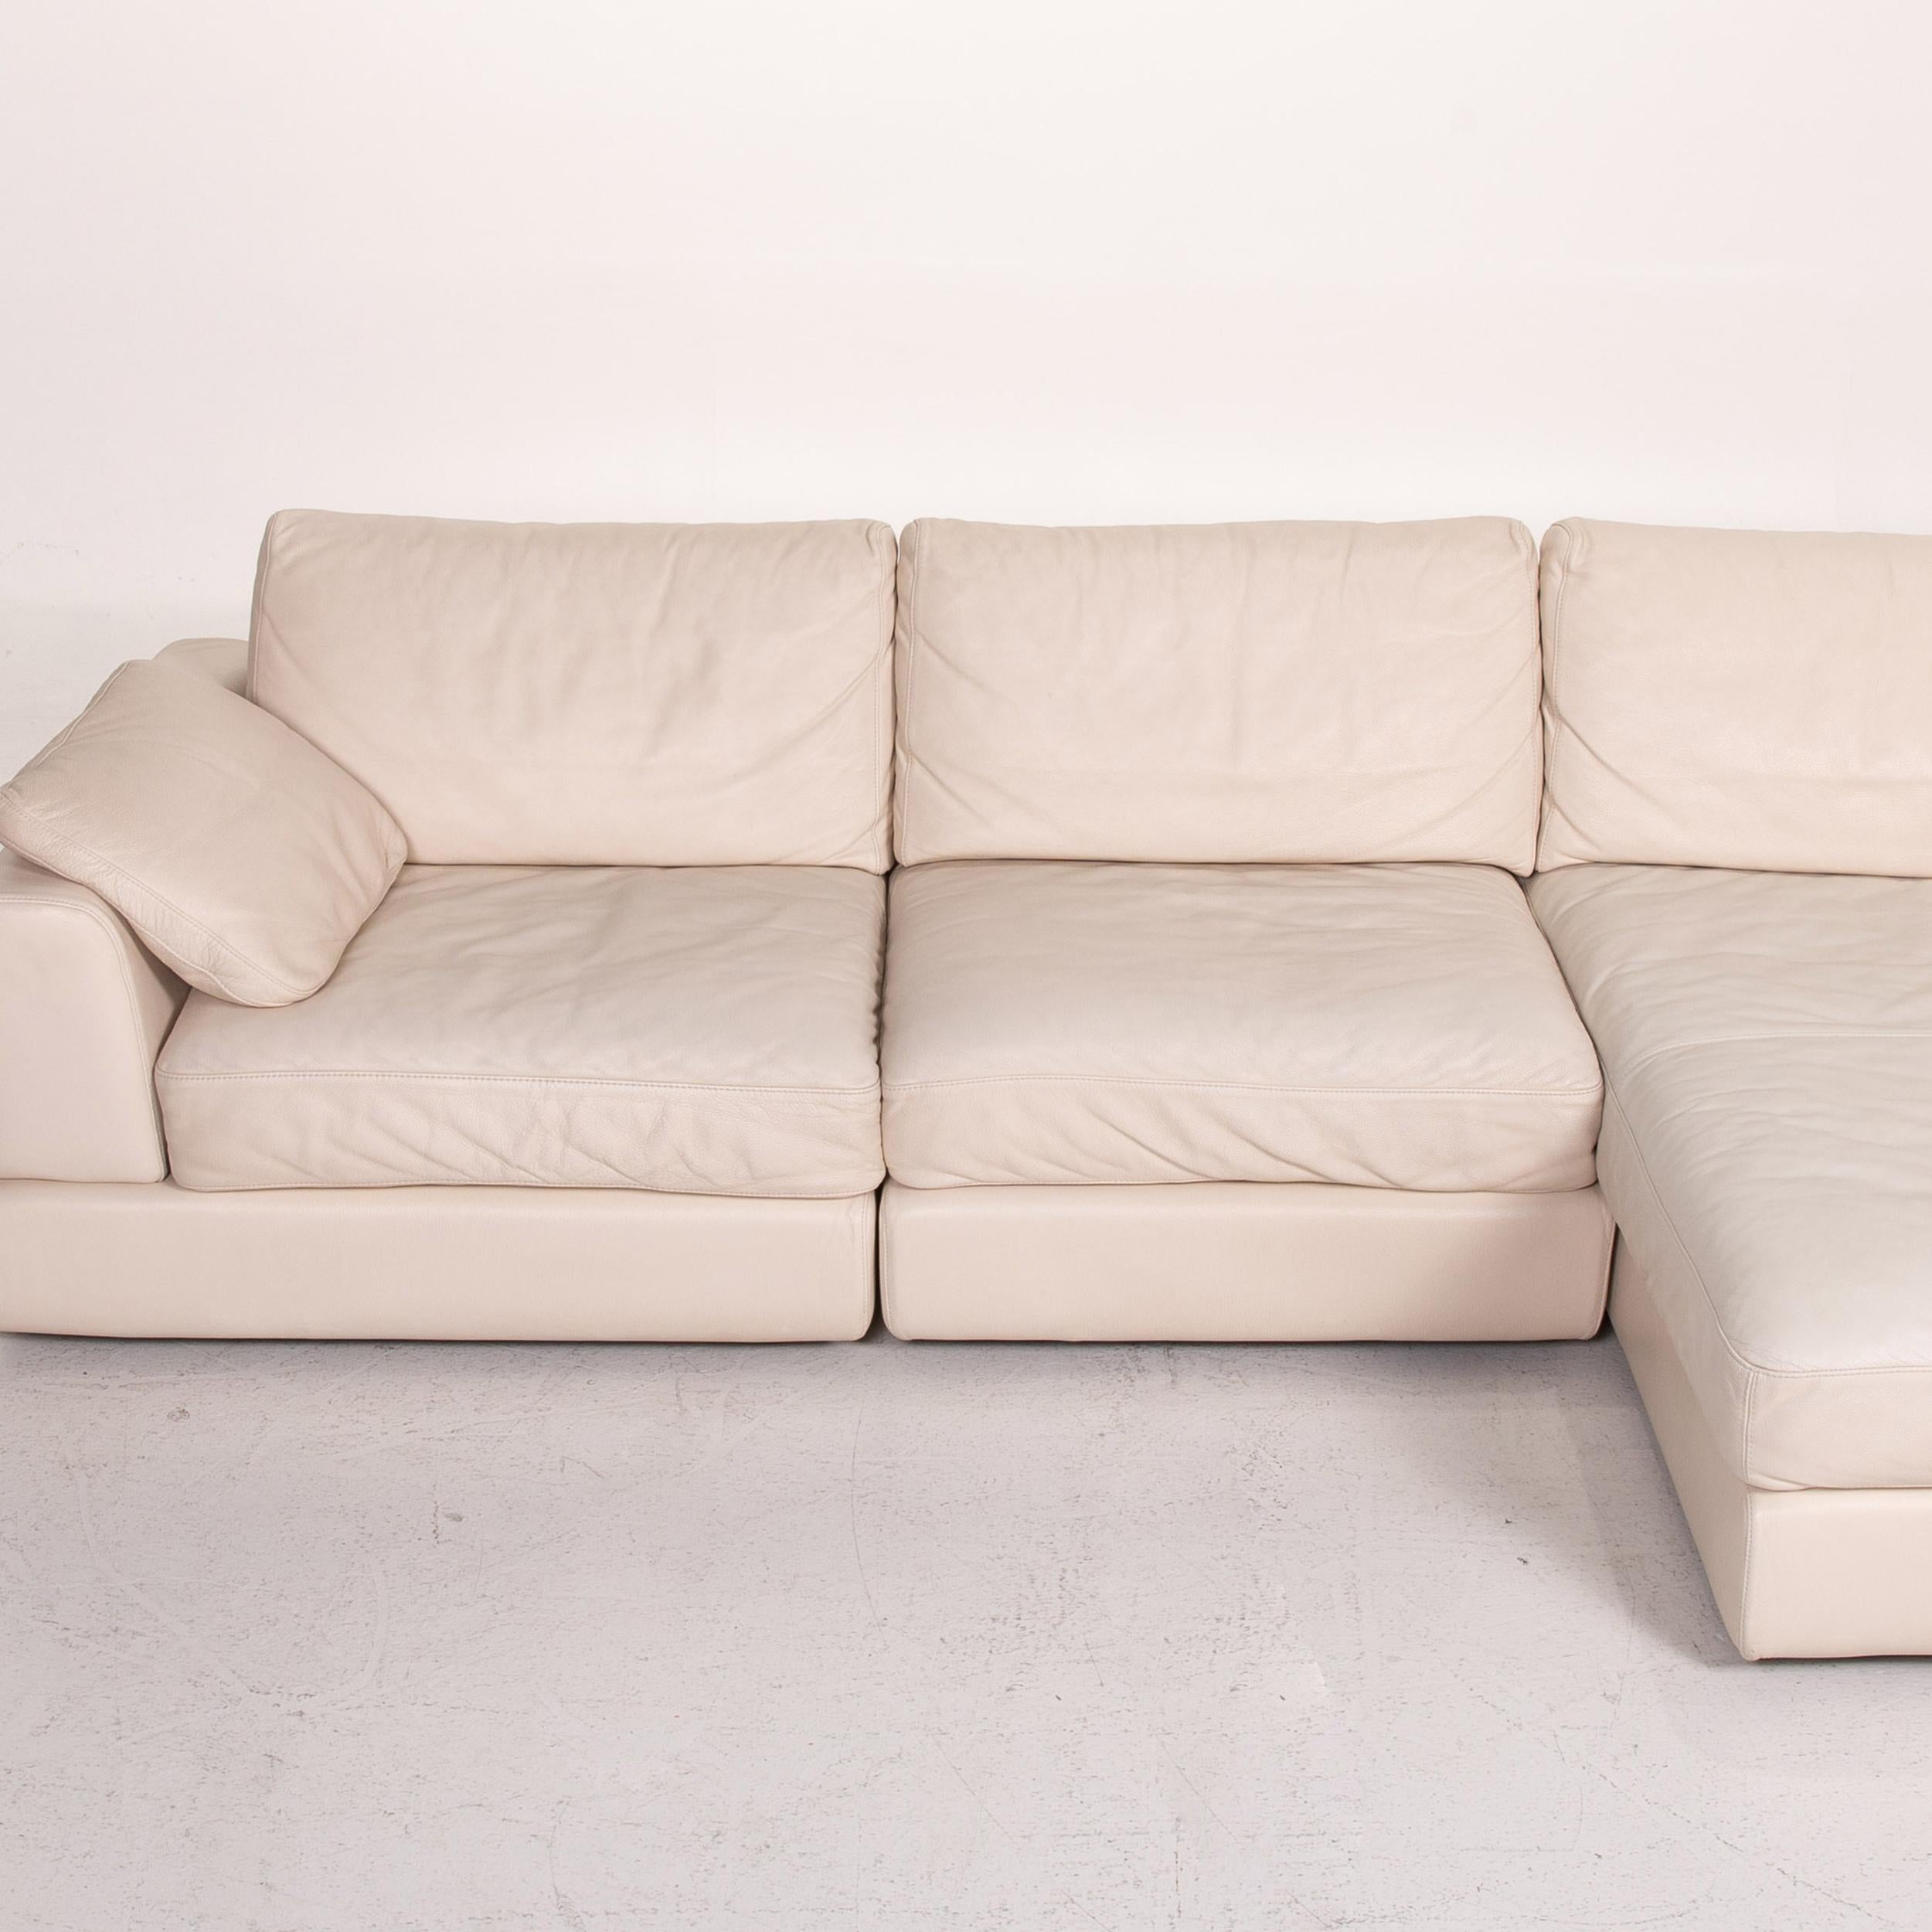 Natuzzi Diagonal 2375 Leather Corner Sofa Cream Sofa Couch In Good Condition For Sale In Cologne, DE